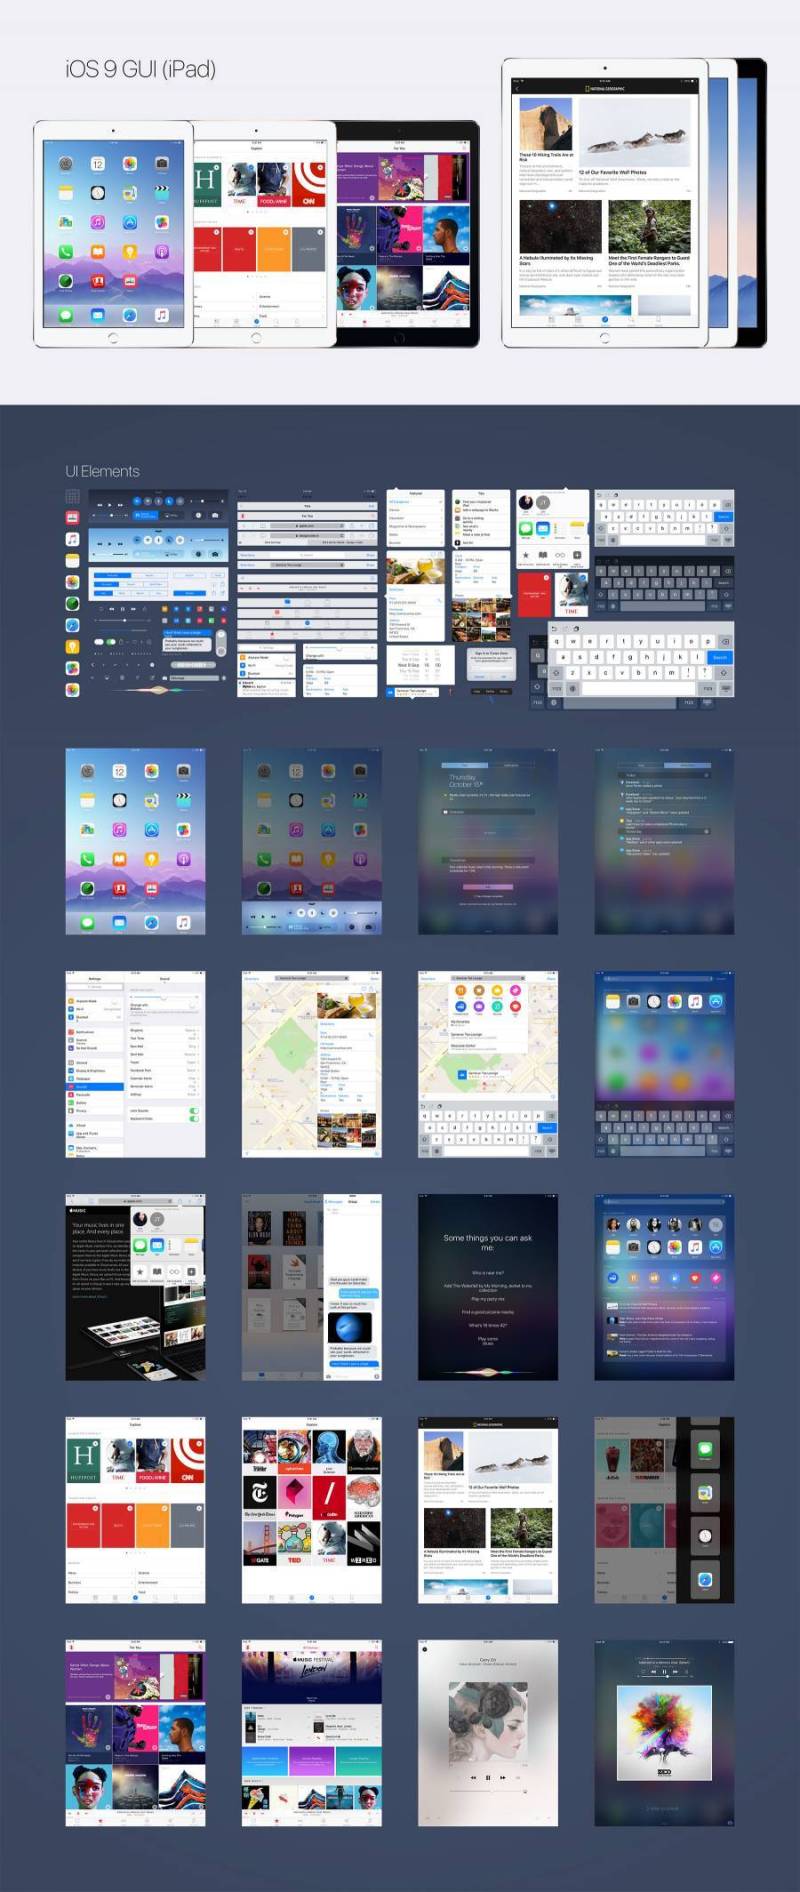 iOS 9 iPad GUI